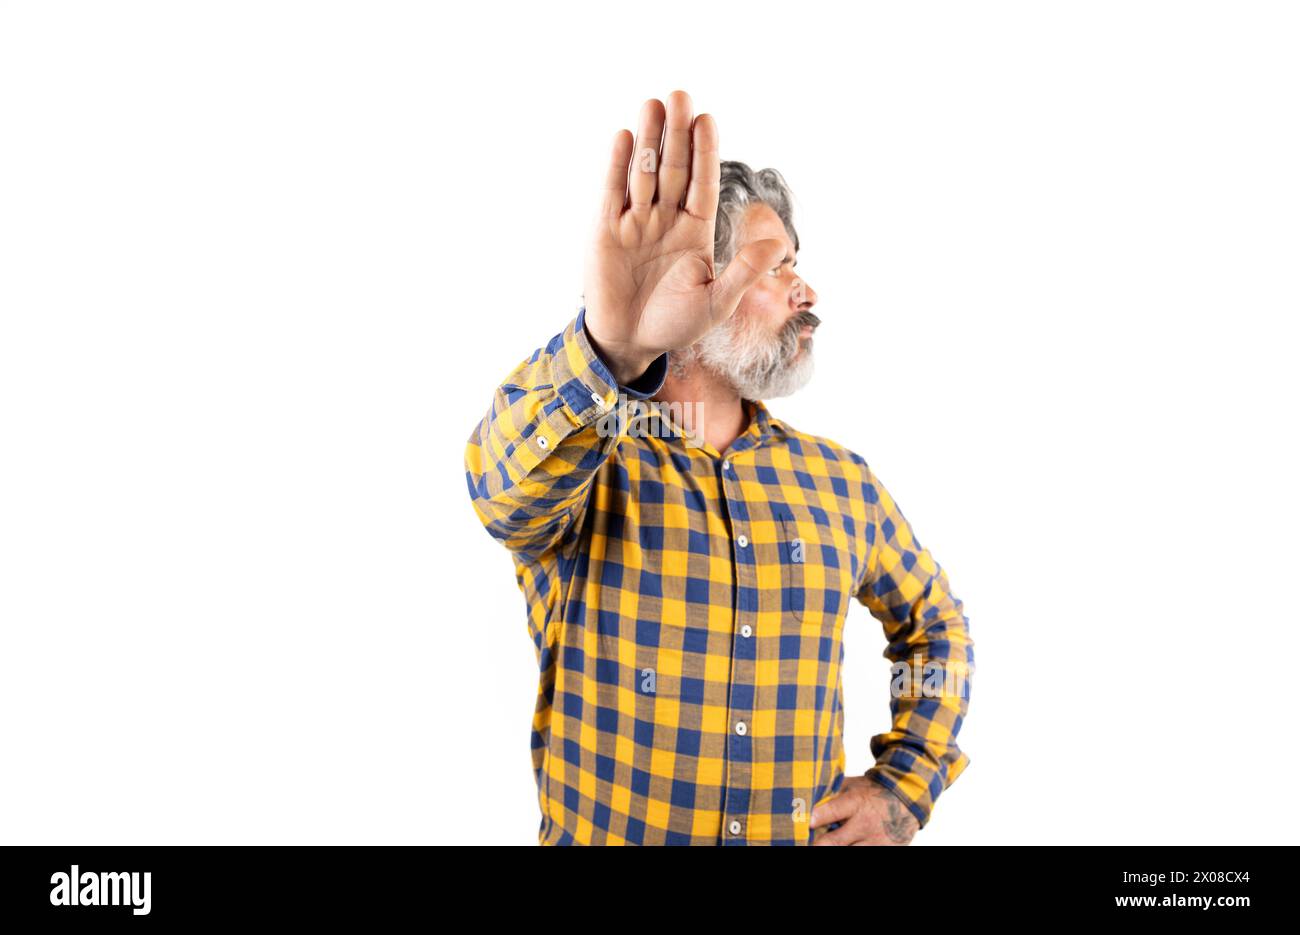 Mann im mittleren Alter, der legere Kleidung trägt, macht eine Stop-Geste mit traurigem und ängstlichem Ausdruck. Ein schändliches und negatives Konzept. Stockfoto